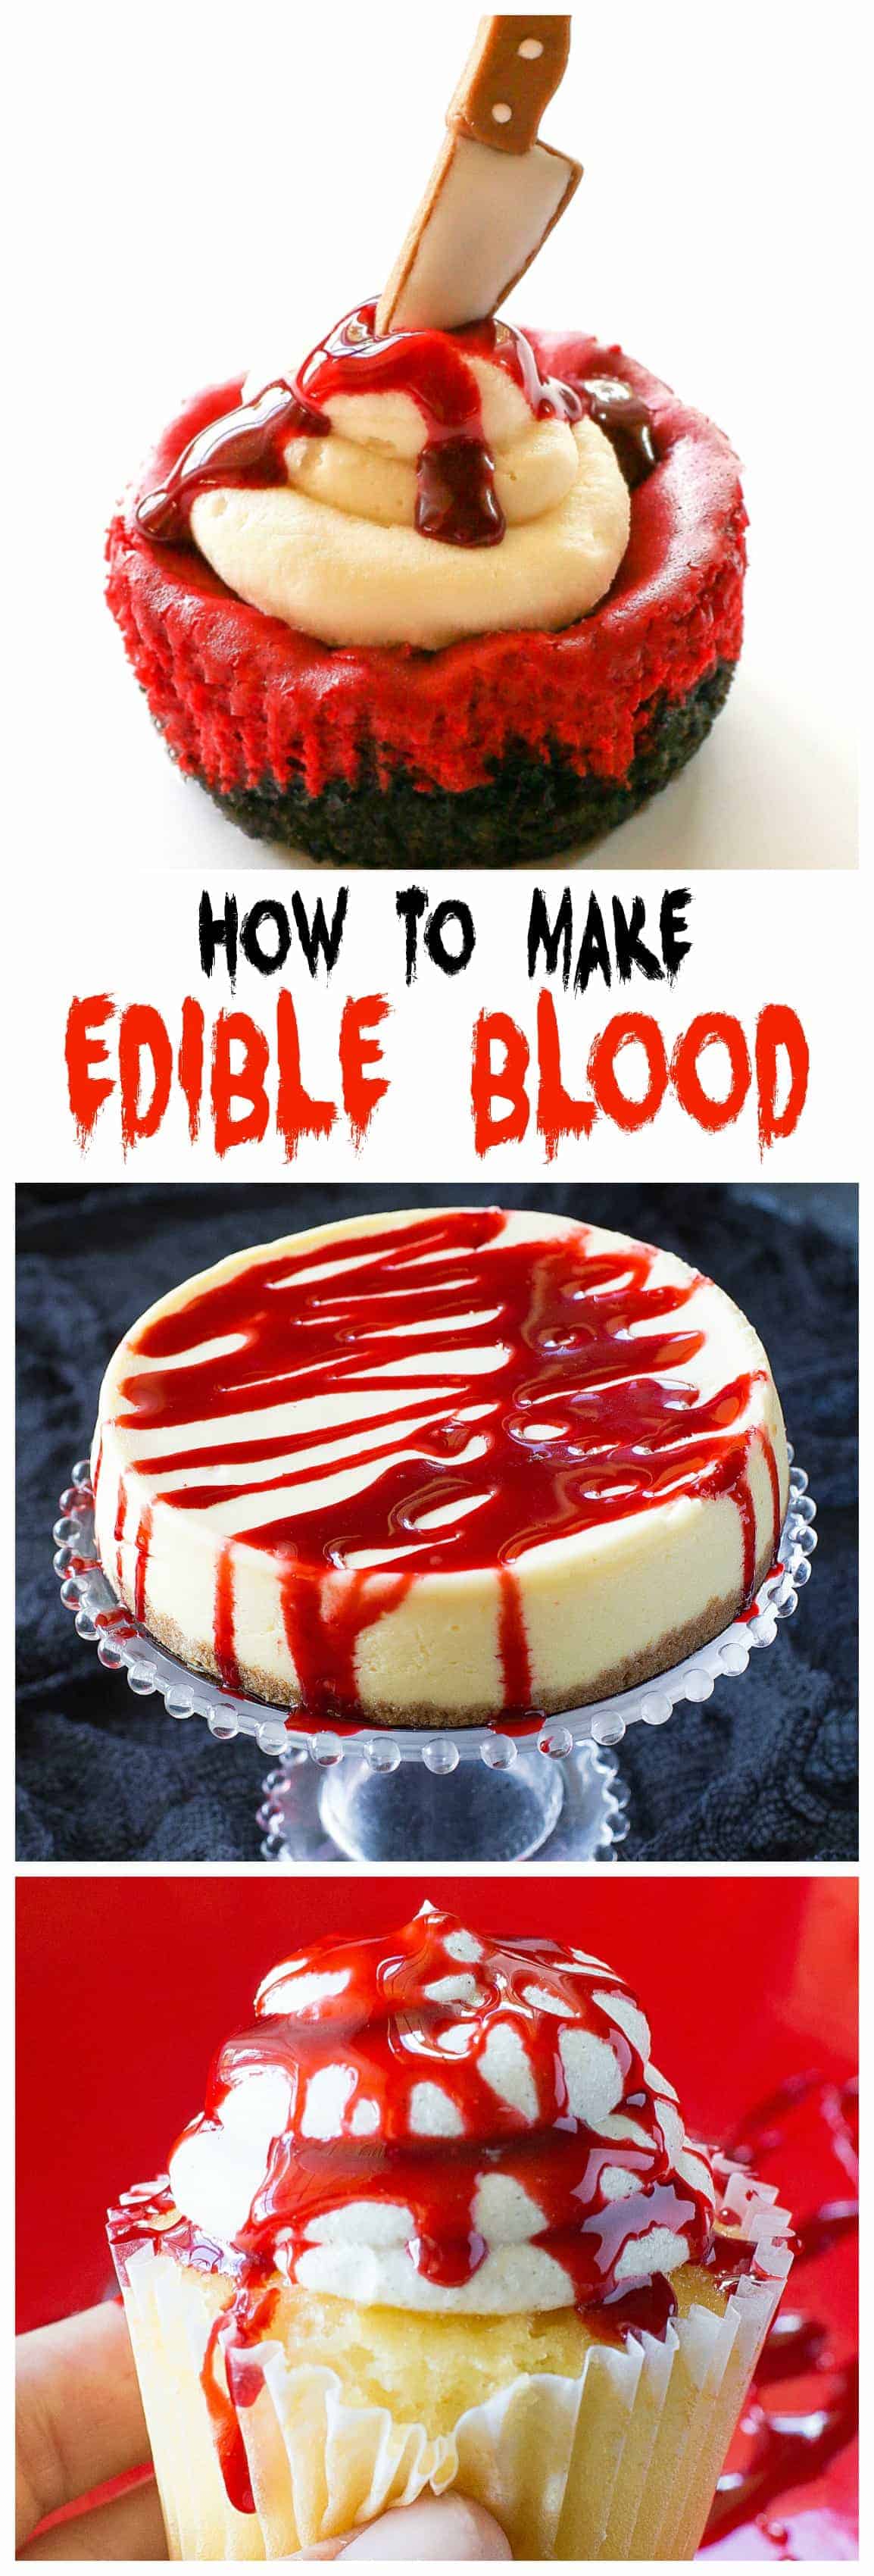 Receita de sangue falso - regue em cupcakes, bolos, rosquinhas, ...  #comestível #fake #sangue #receita #halloween